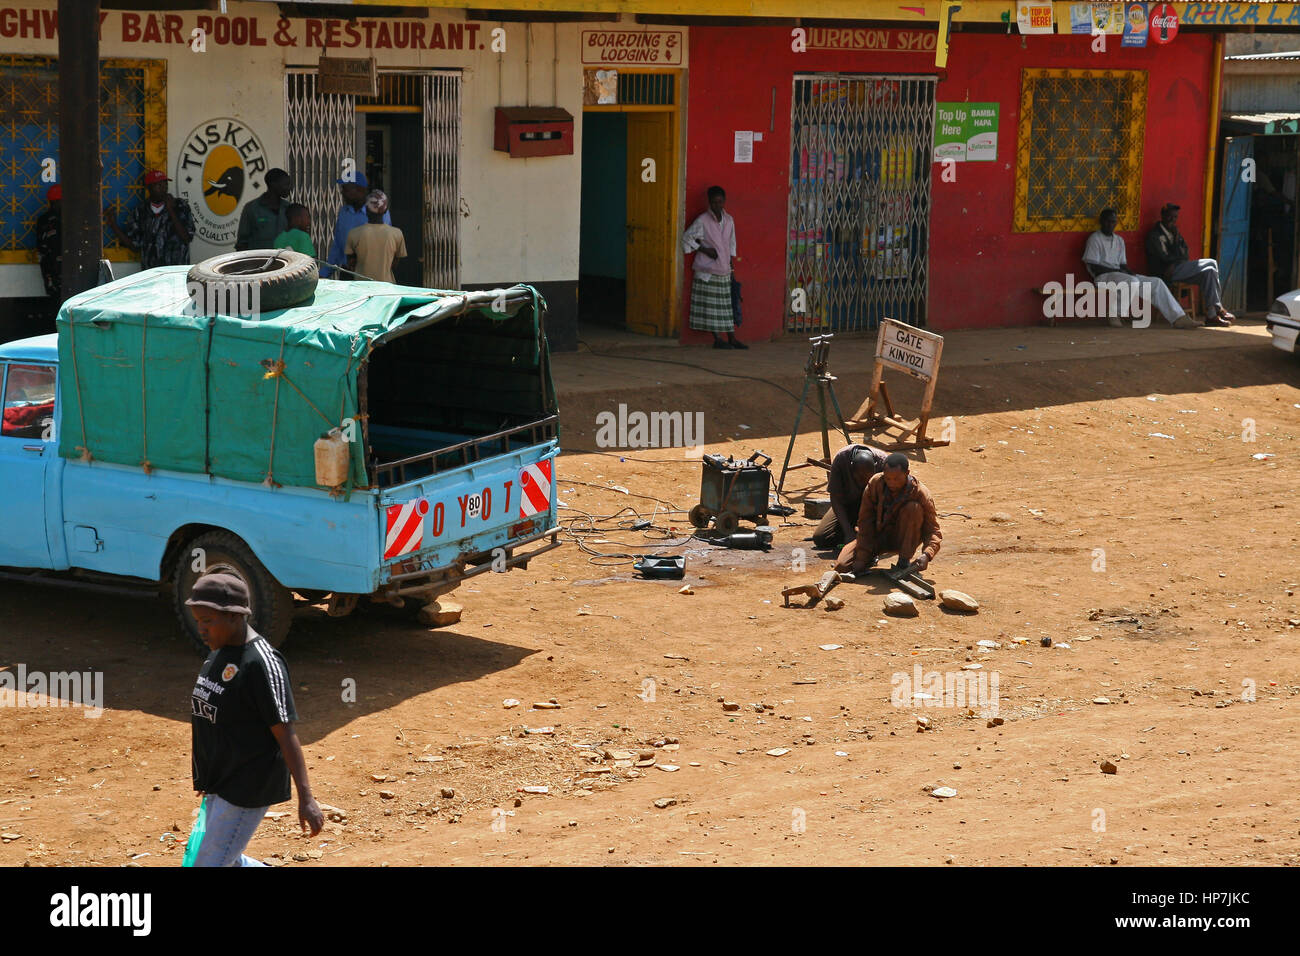 NAIROBI, Kenia - 8. Juni 2009: Straßenansicht von einem armen Vorort in Nairobi mit verschiedenen Geschäften und Menschen Handel auf der Straße Stockfoto